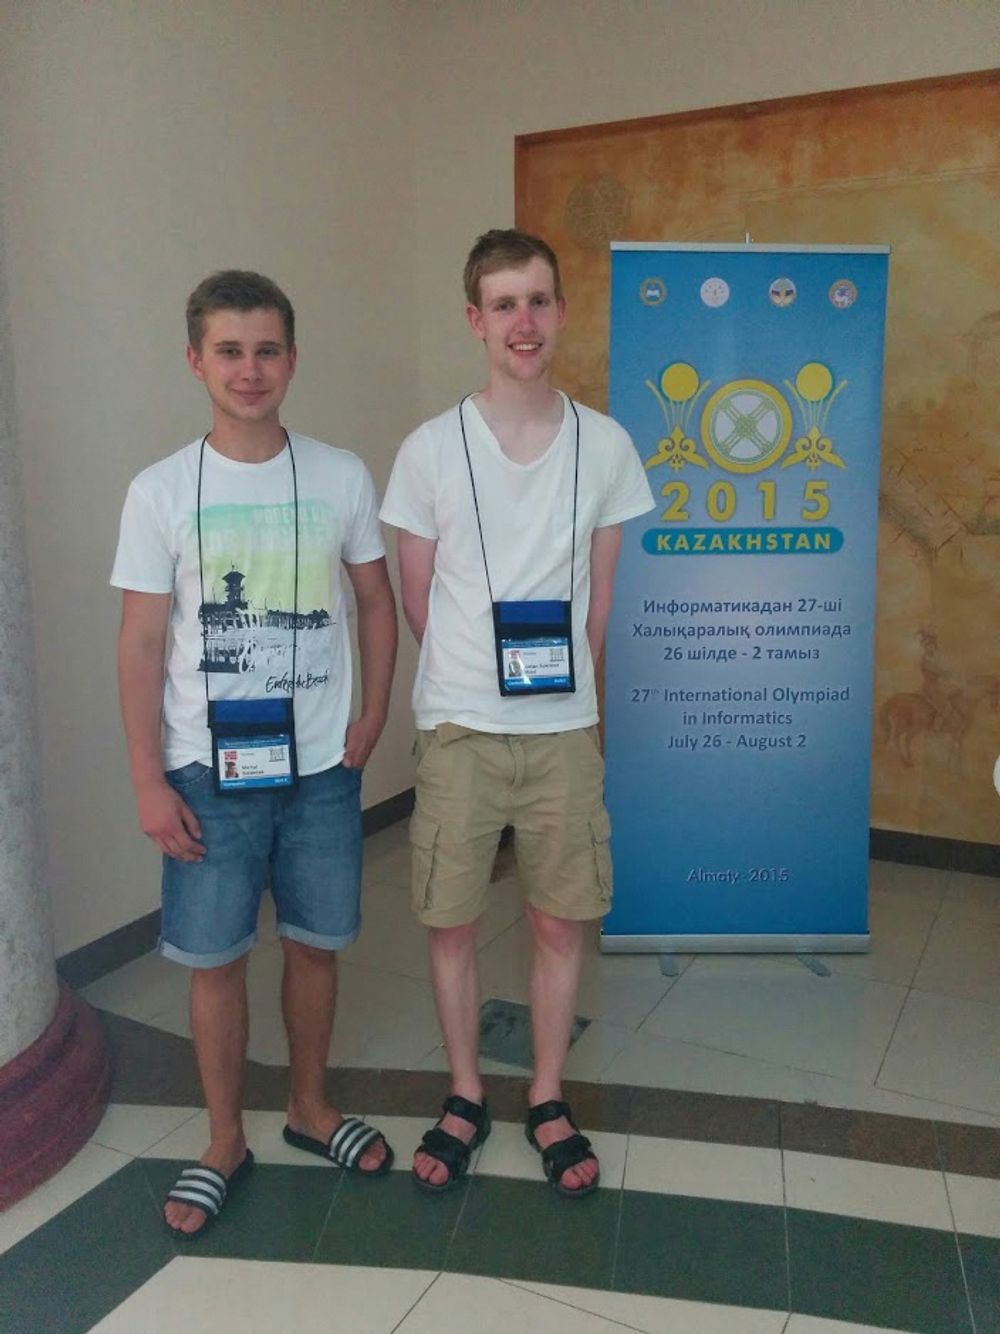 Både Michal Sladecek og Johan S. Wind fikk medalje under årets internasjonale informatikk-OL i Kazakhstan.